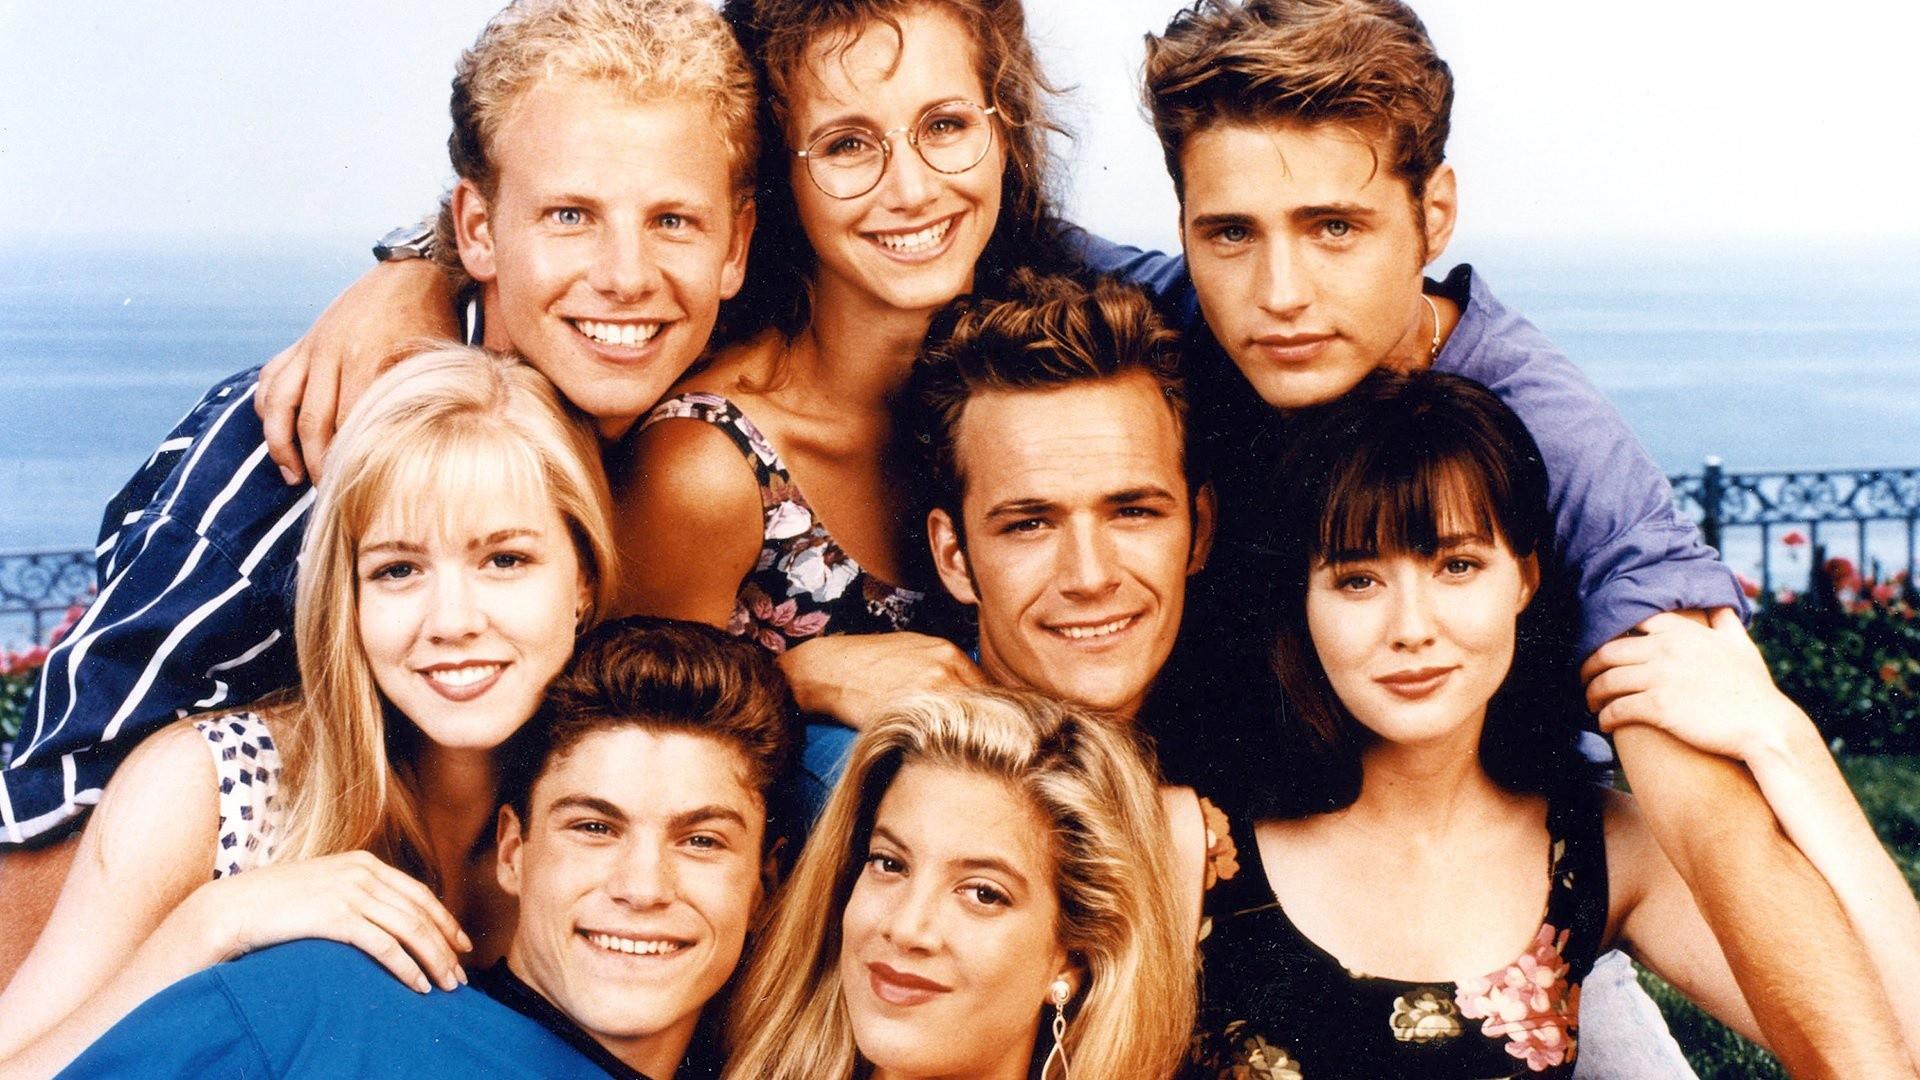 Беверли-Хиллз 90210 – 1 сезон 10 серия «Оборотная сторона любви» / Beverly Hills, 90210